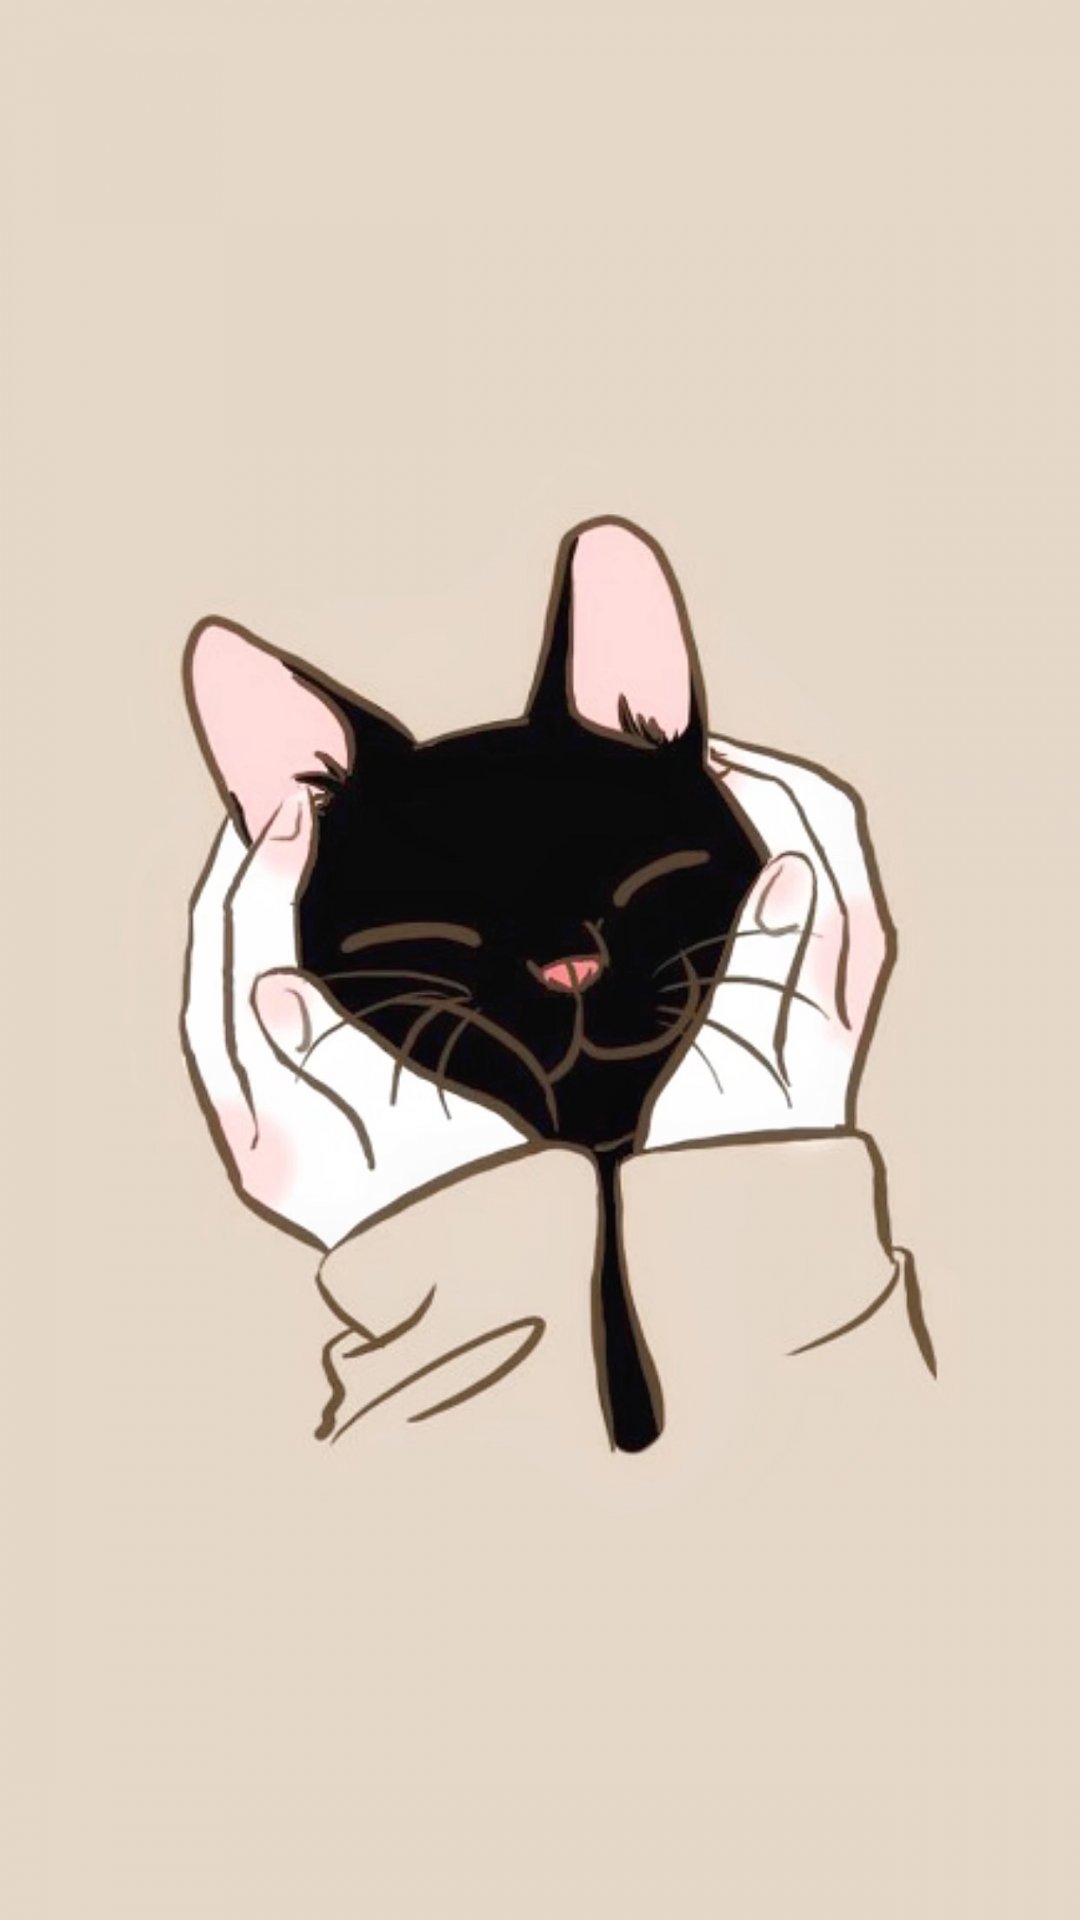 粉色背景,一只被双手抱住脸的卡通黑猫